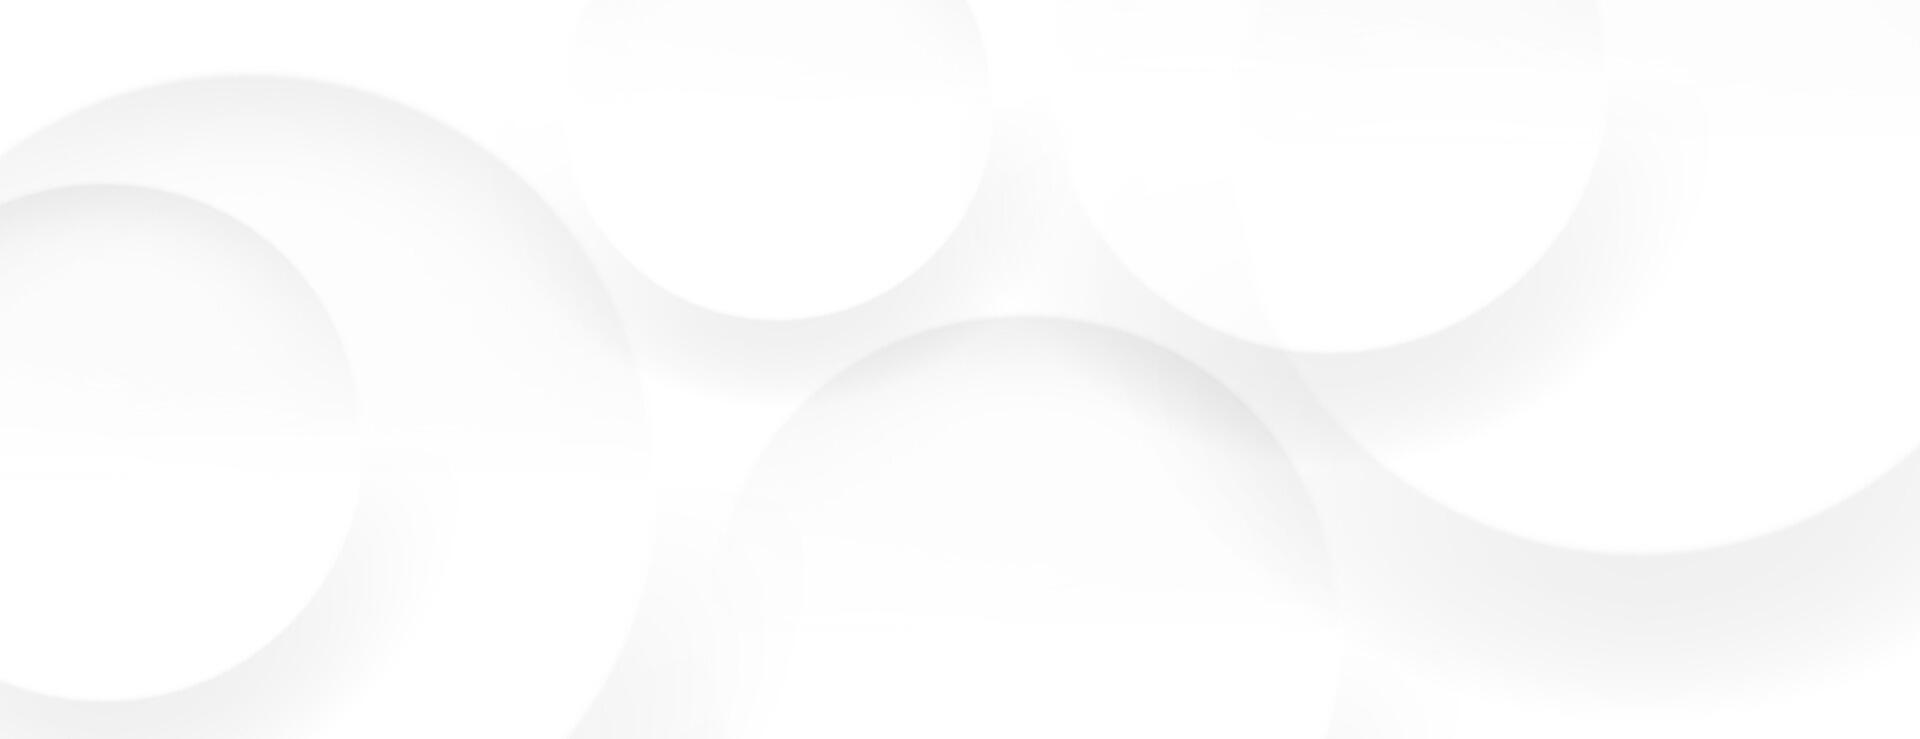 abstract wit banier achtergrond met cirkel structuur samenstelling. vector illustratie